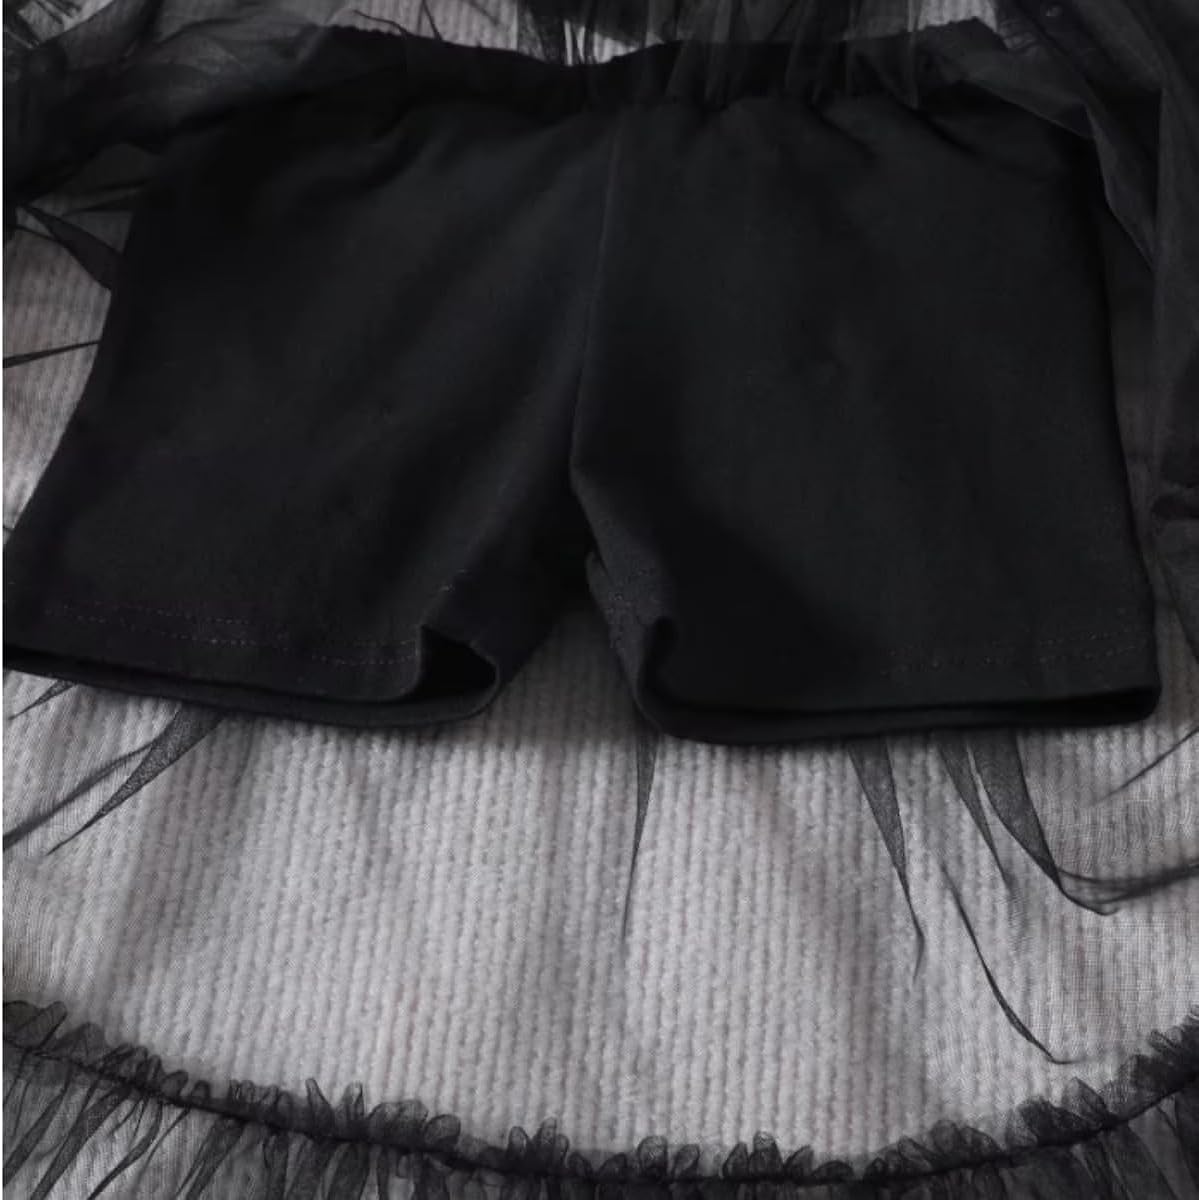 Girls Letter Printed T-shirt Black Mesh Skirt Set